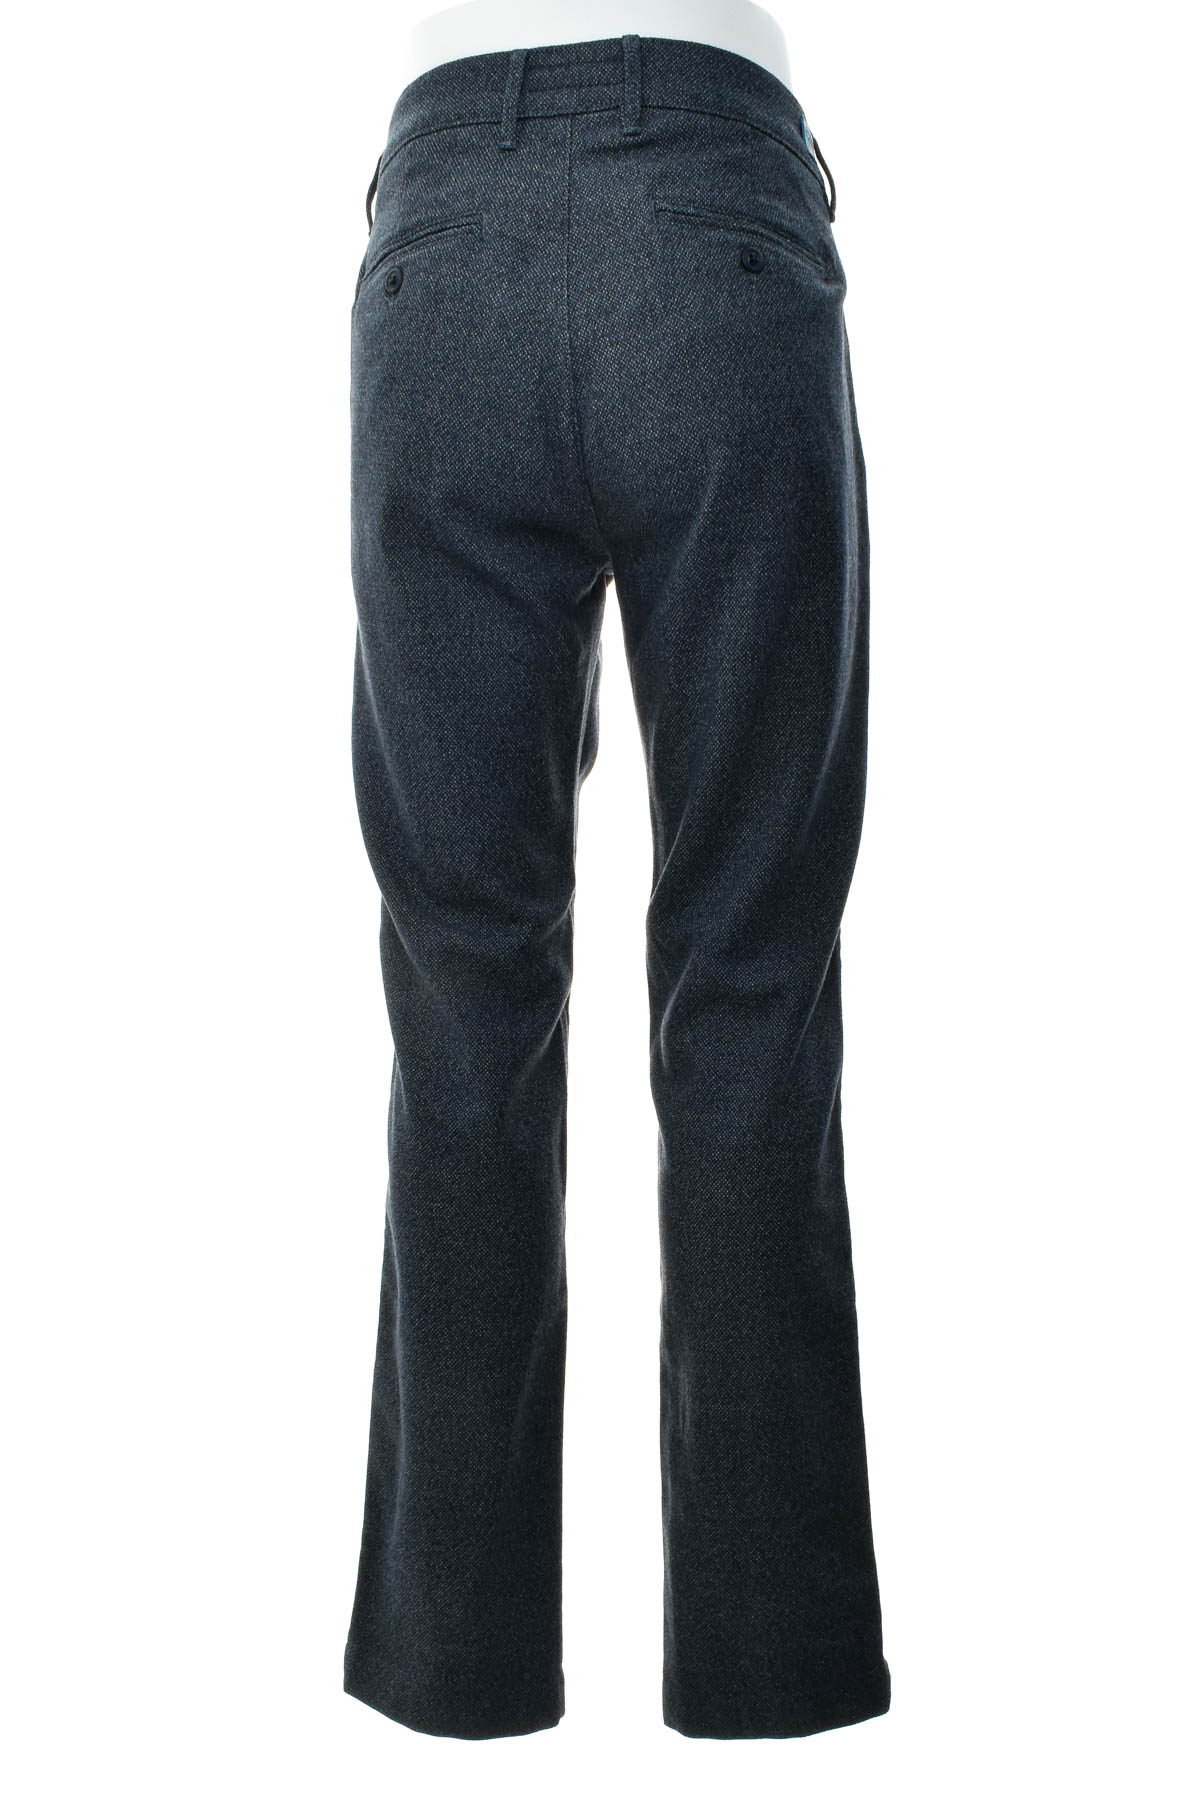 Men's trousers - Birmingham Wear - 1